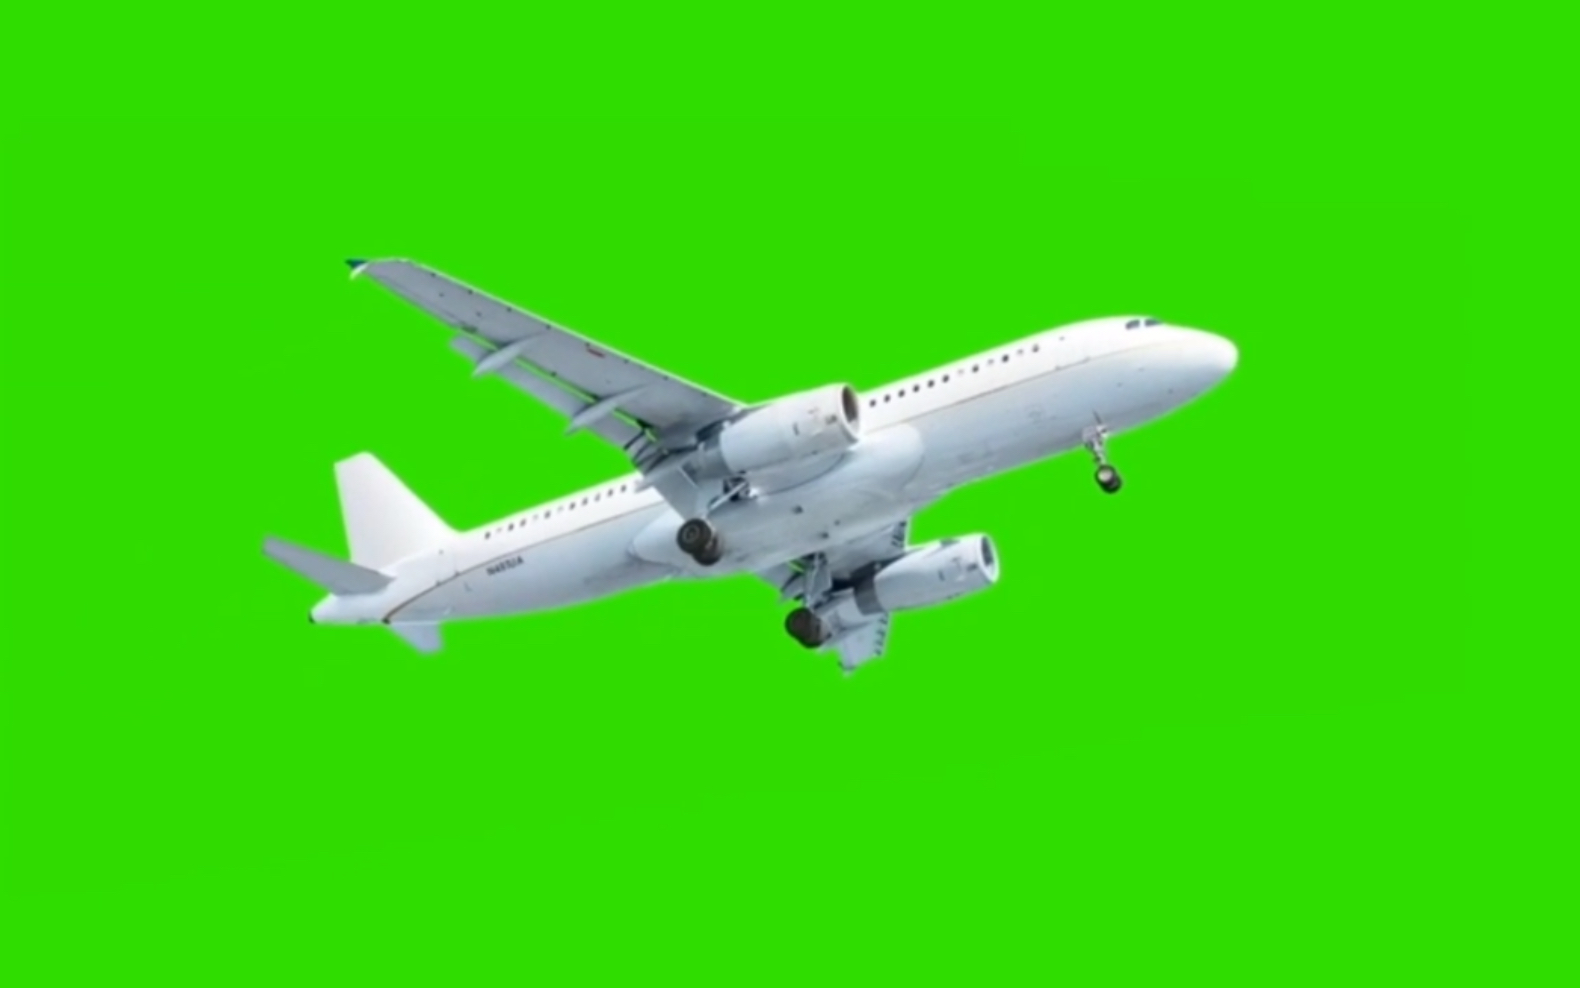 飞机绿色通行图片